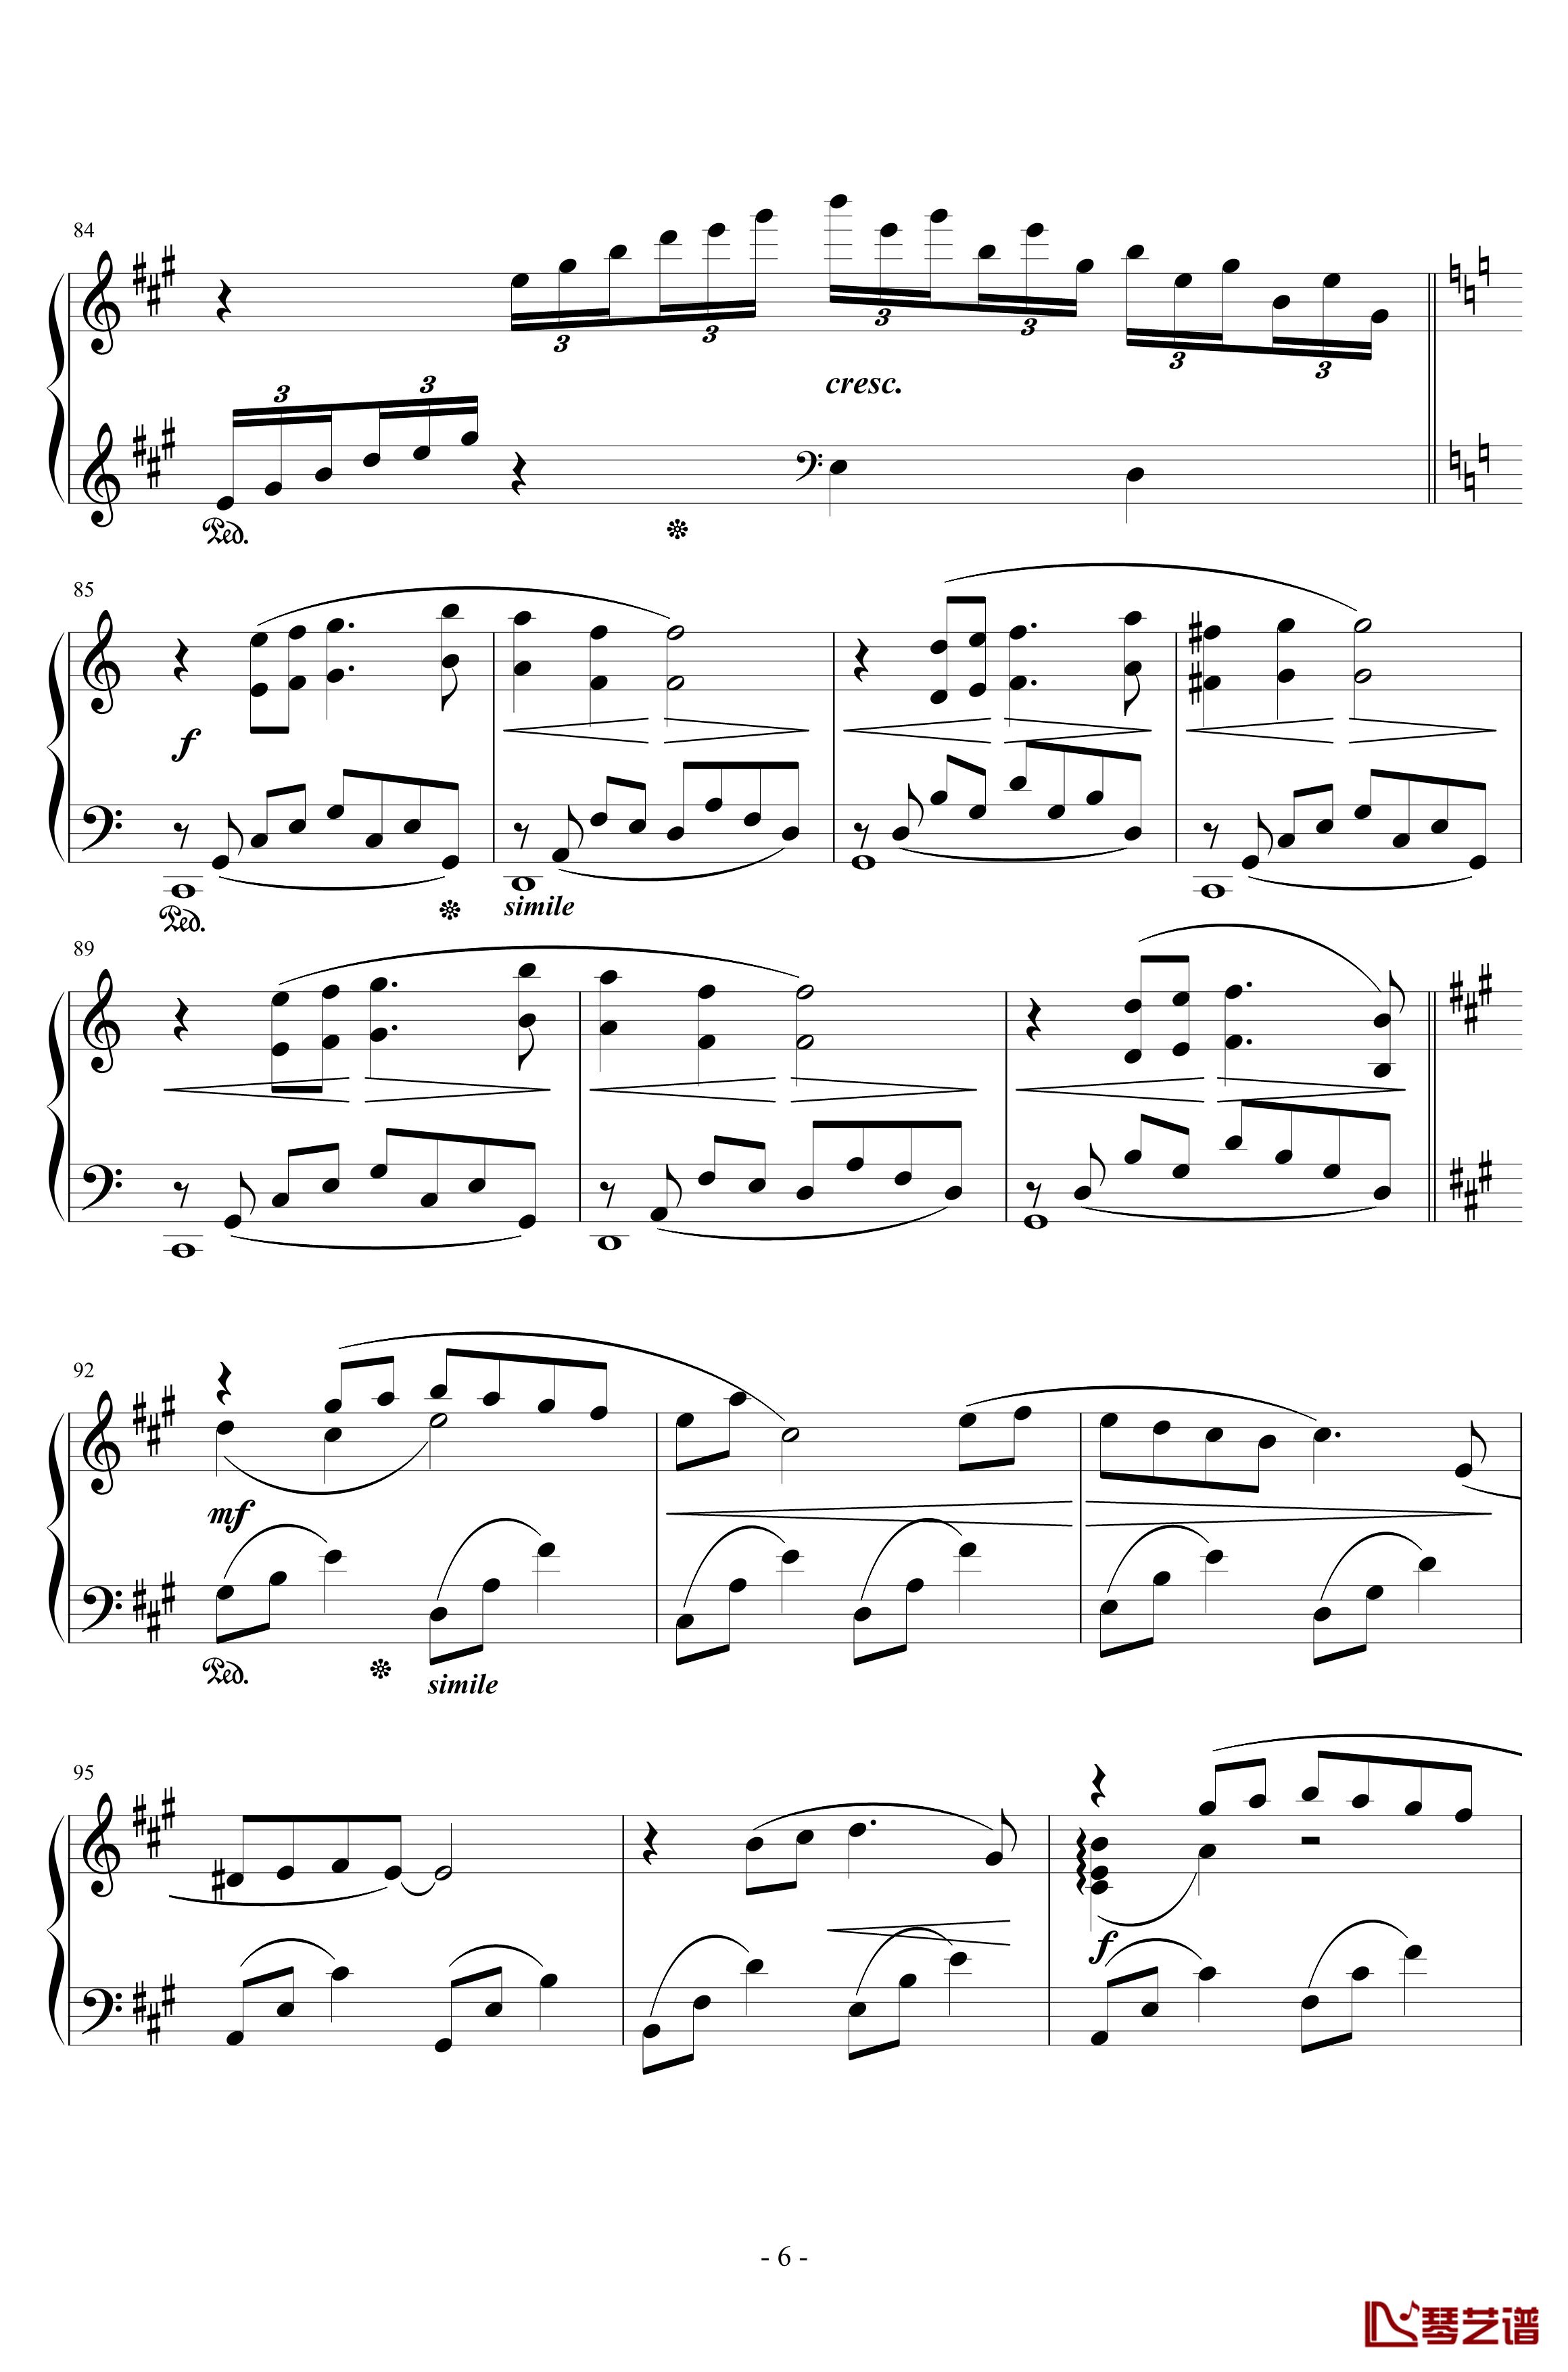 最终幻想8花园主题音乐钢琴谱-植松伸夫6